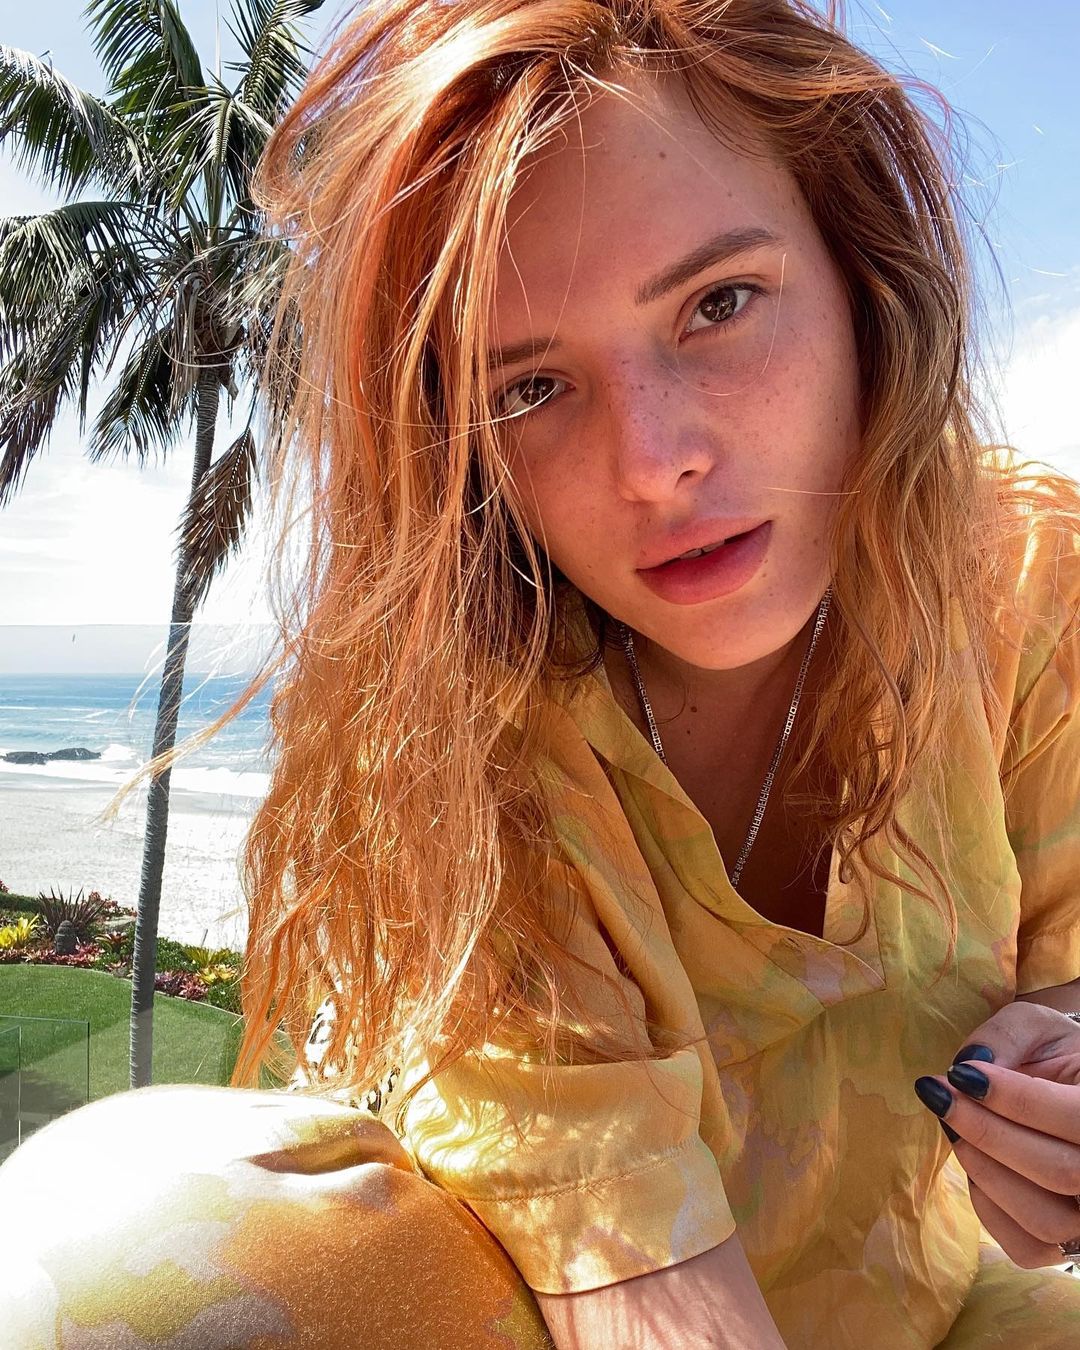 Bella Thorne No Makeup Photos Selfies of the Actress' Bare Skin Life